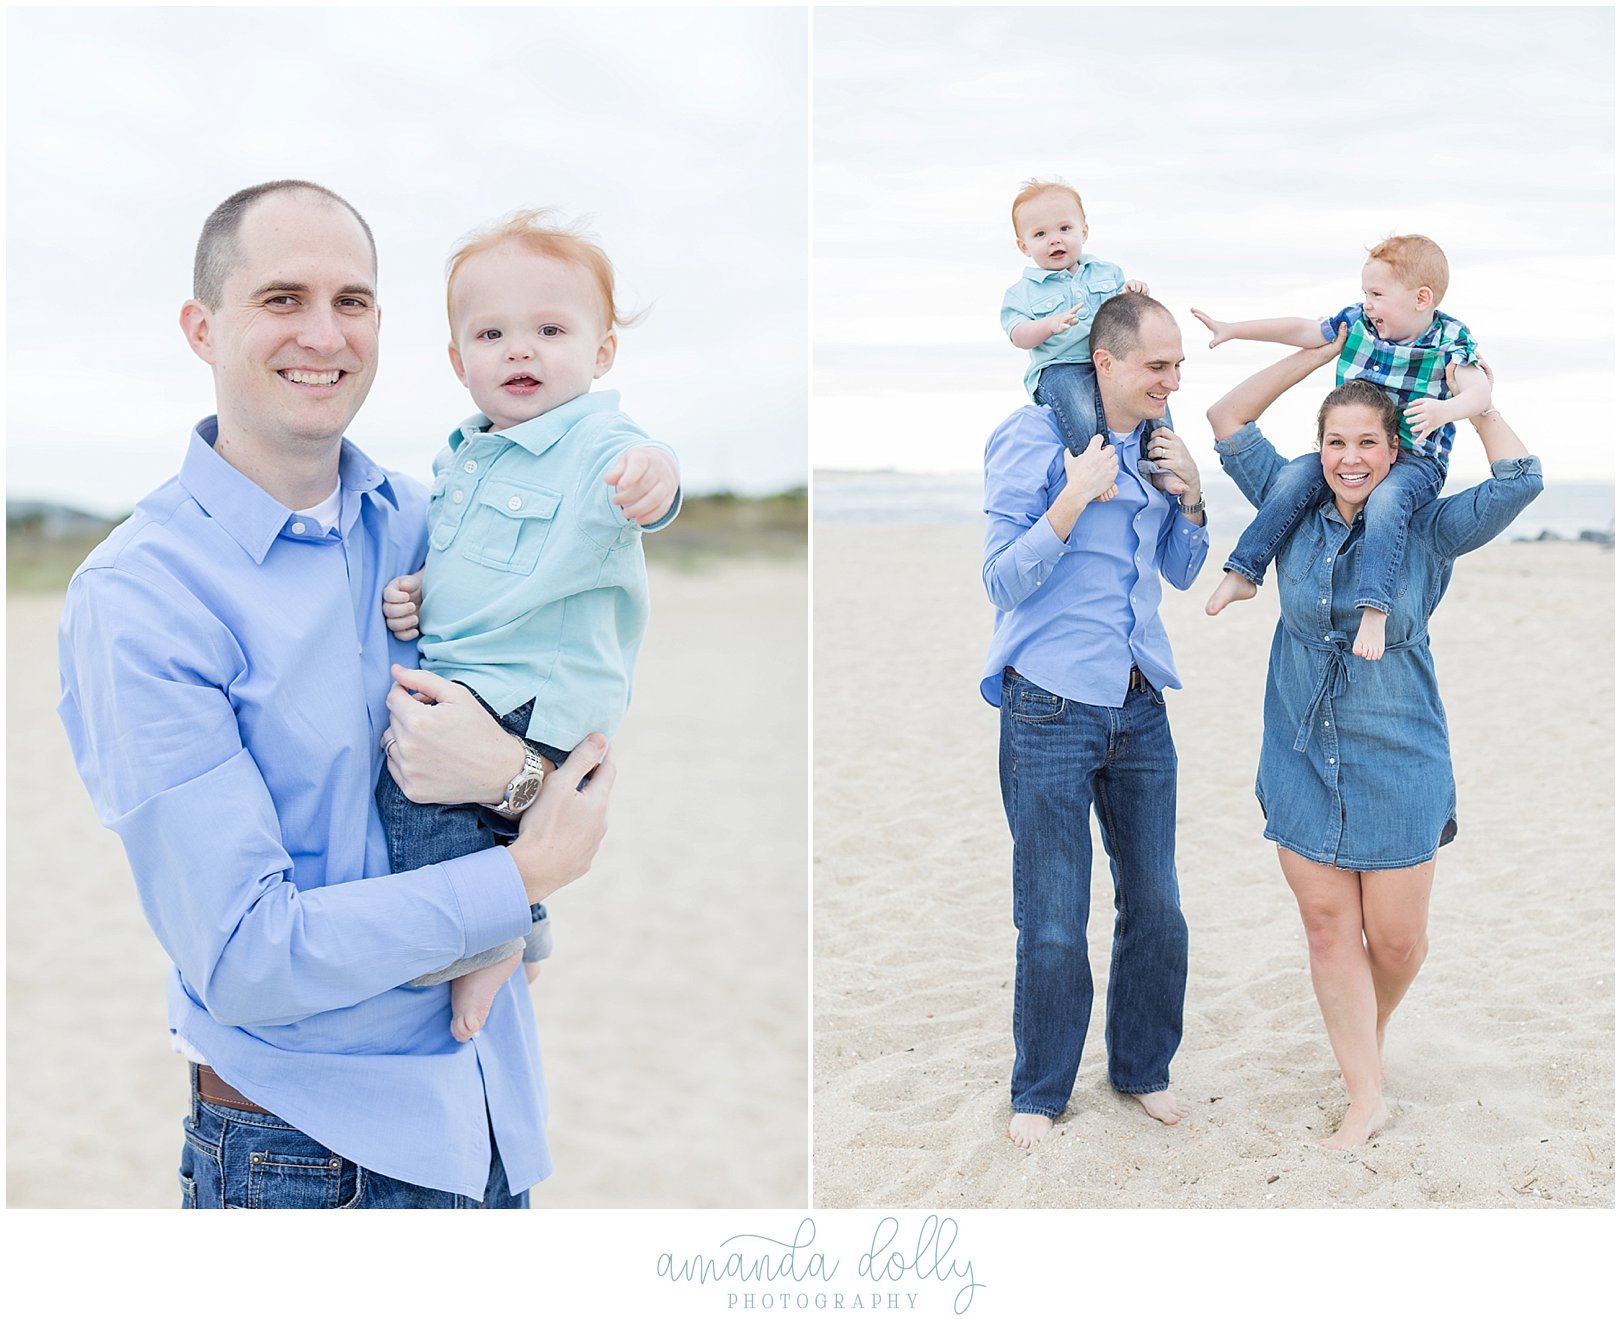 Sandy Hook Beach Family Photography